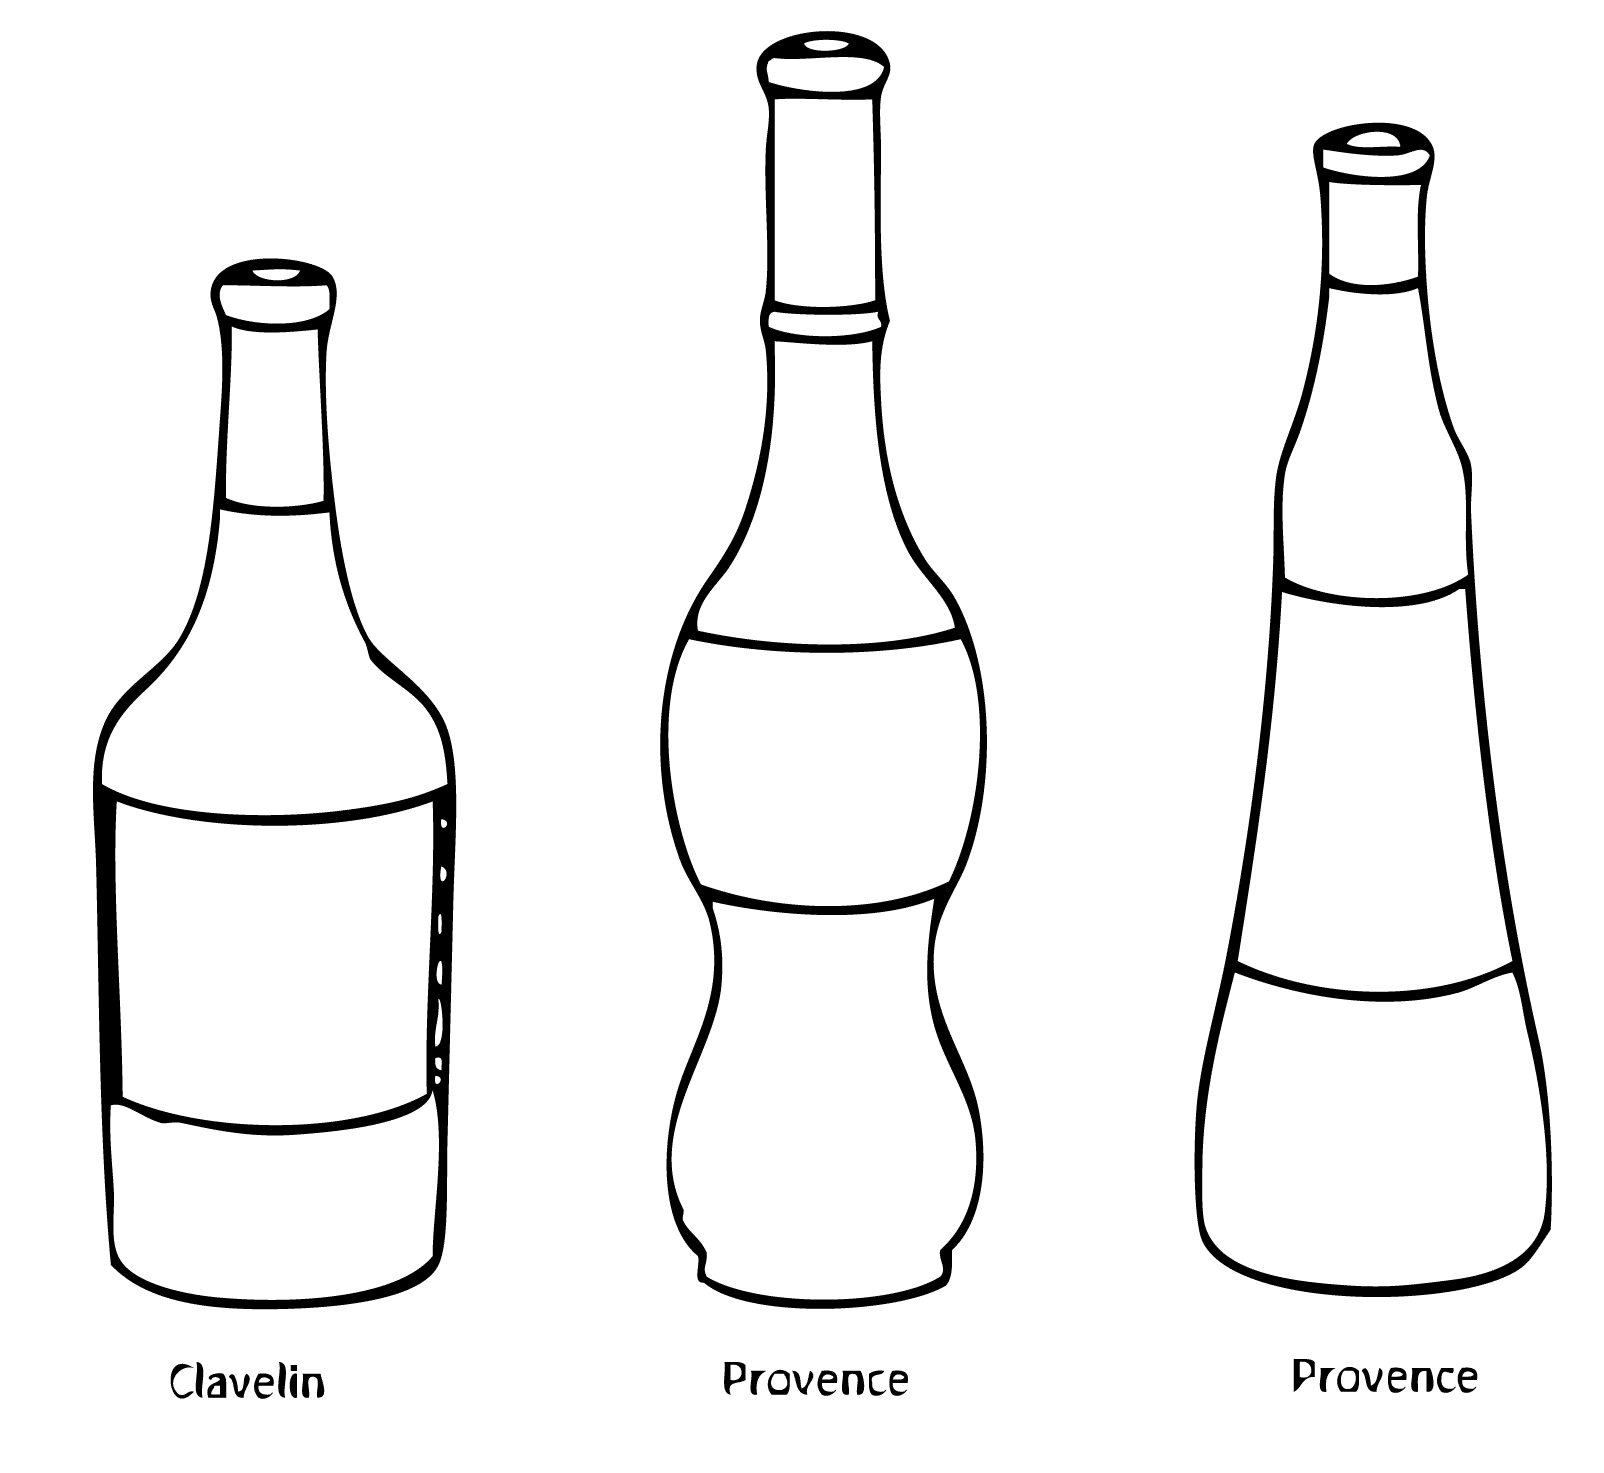 Pourquoi y a-t-il différentes formes de bouteille de vin ? - Trois Fois Vin